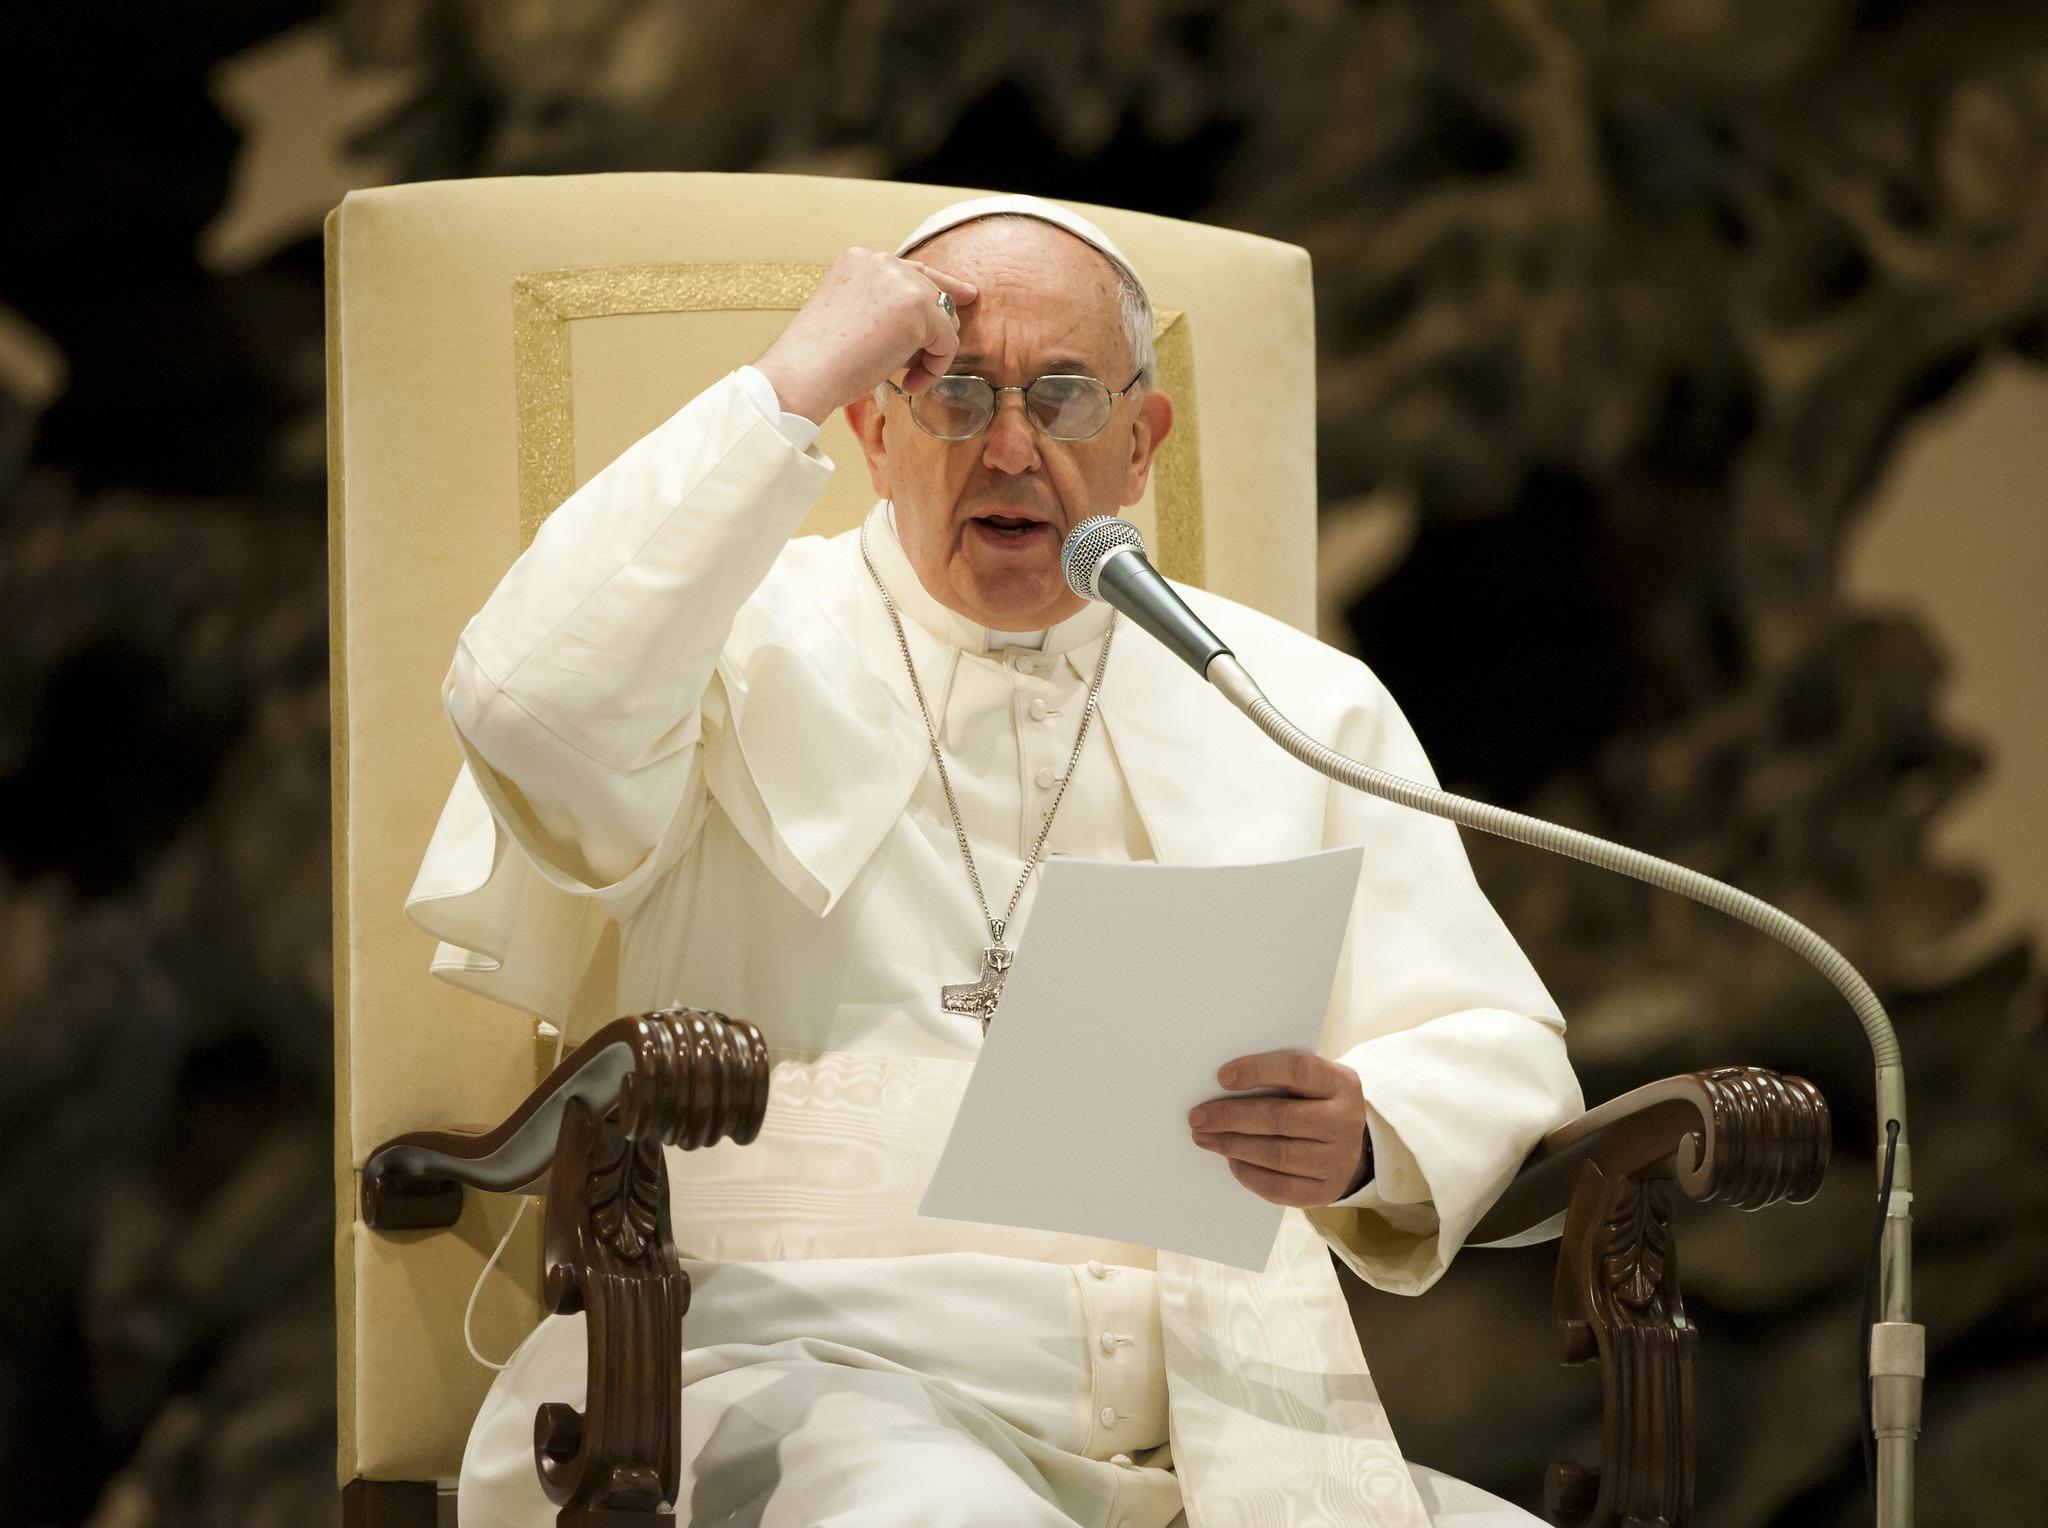 Paus Franciscus tegen extreemlinks: "Ik kan een handje helpen."